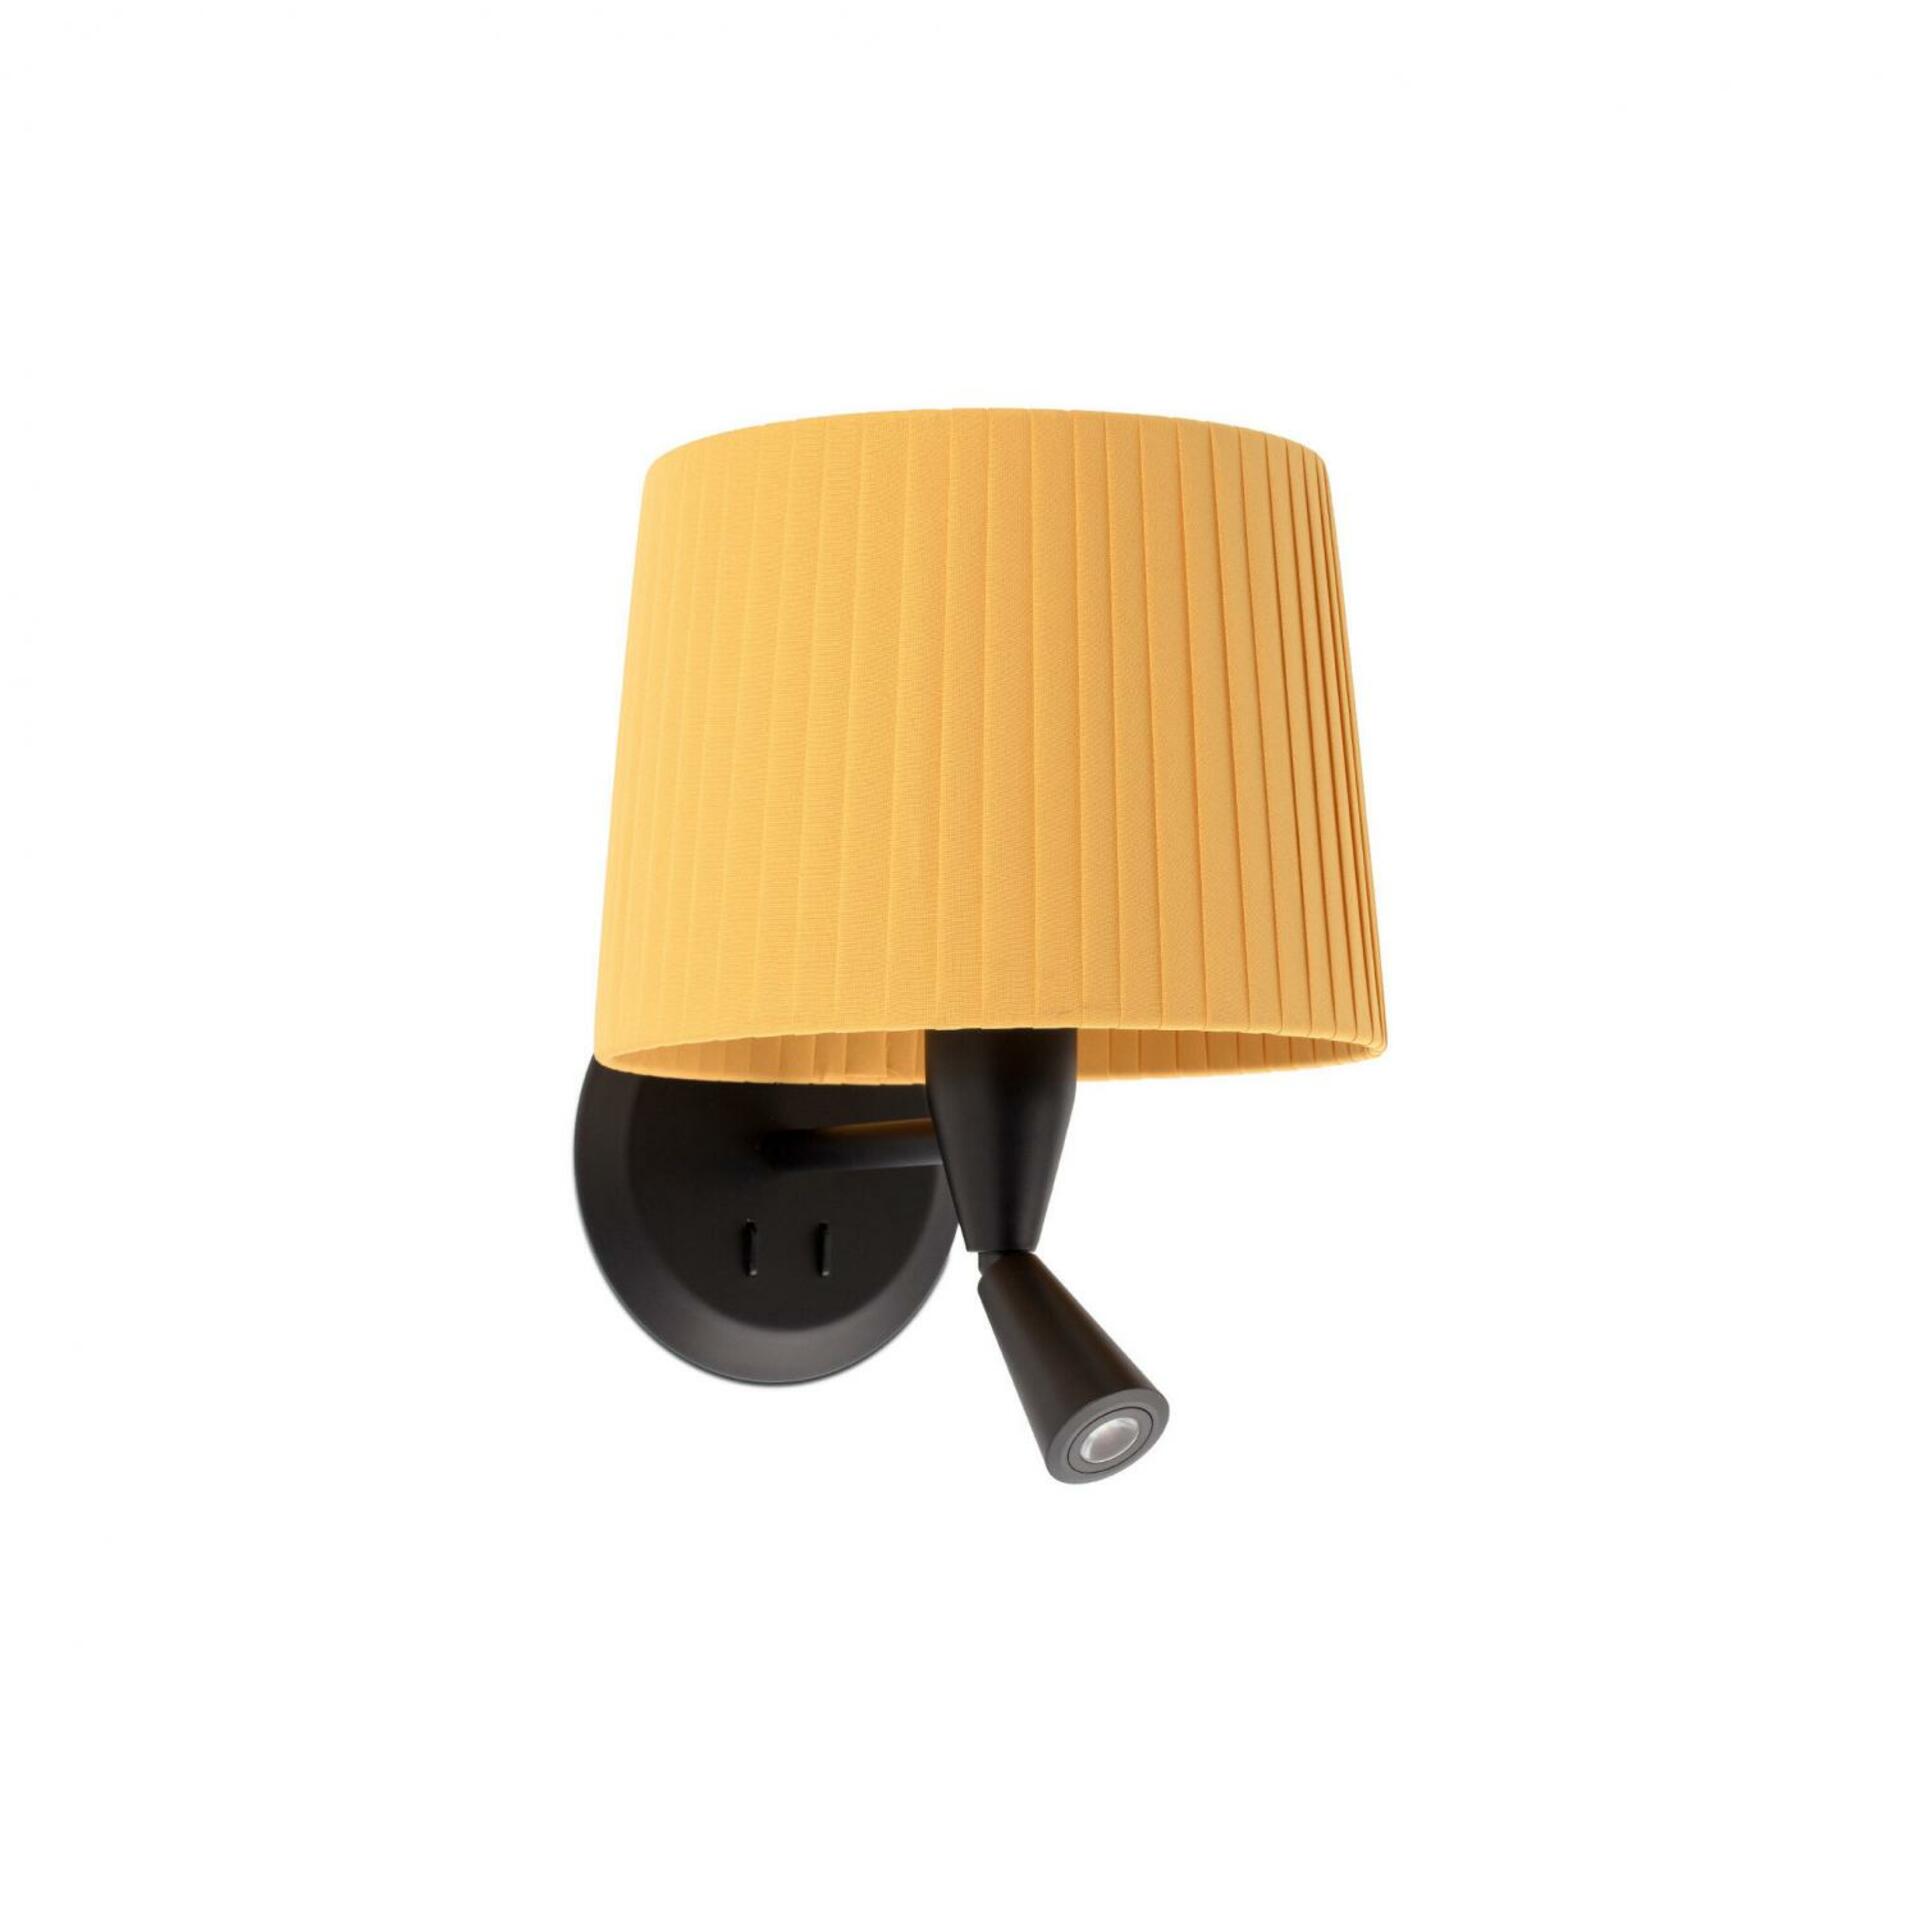 FARO SAMBA černá/skládaná žlutá nástěnná lampa se čtecí lampičkou